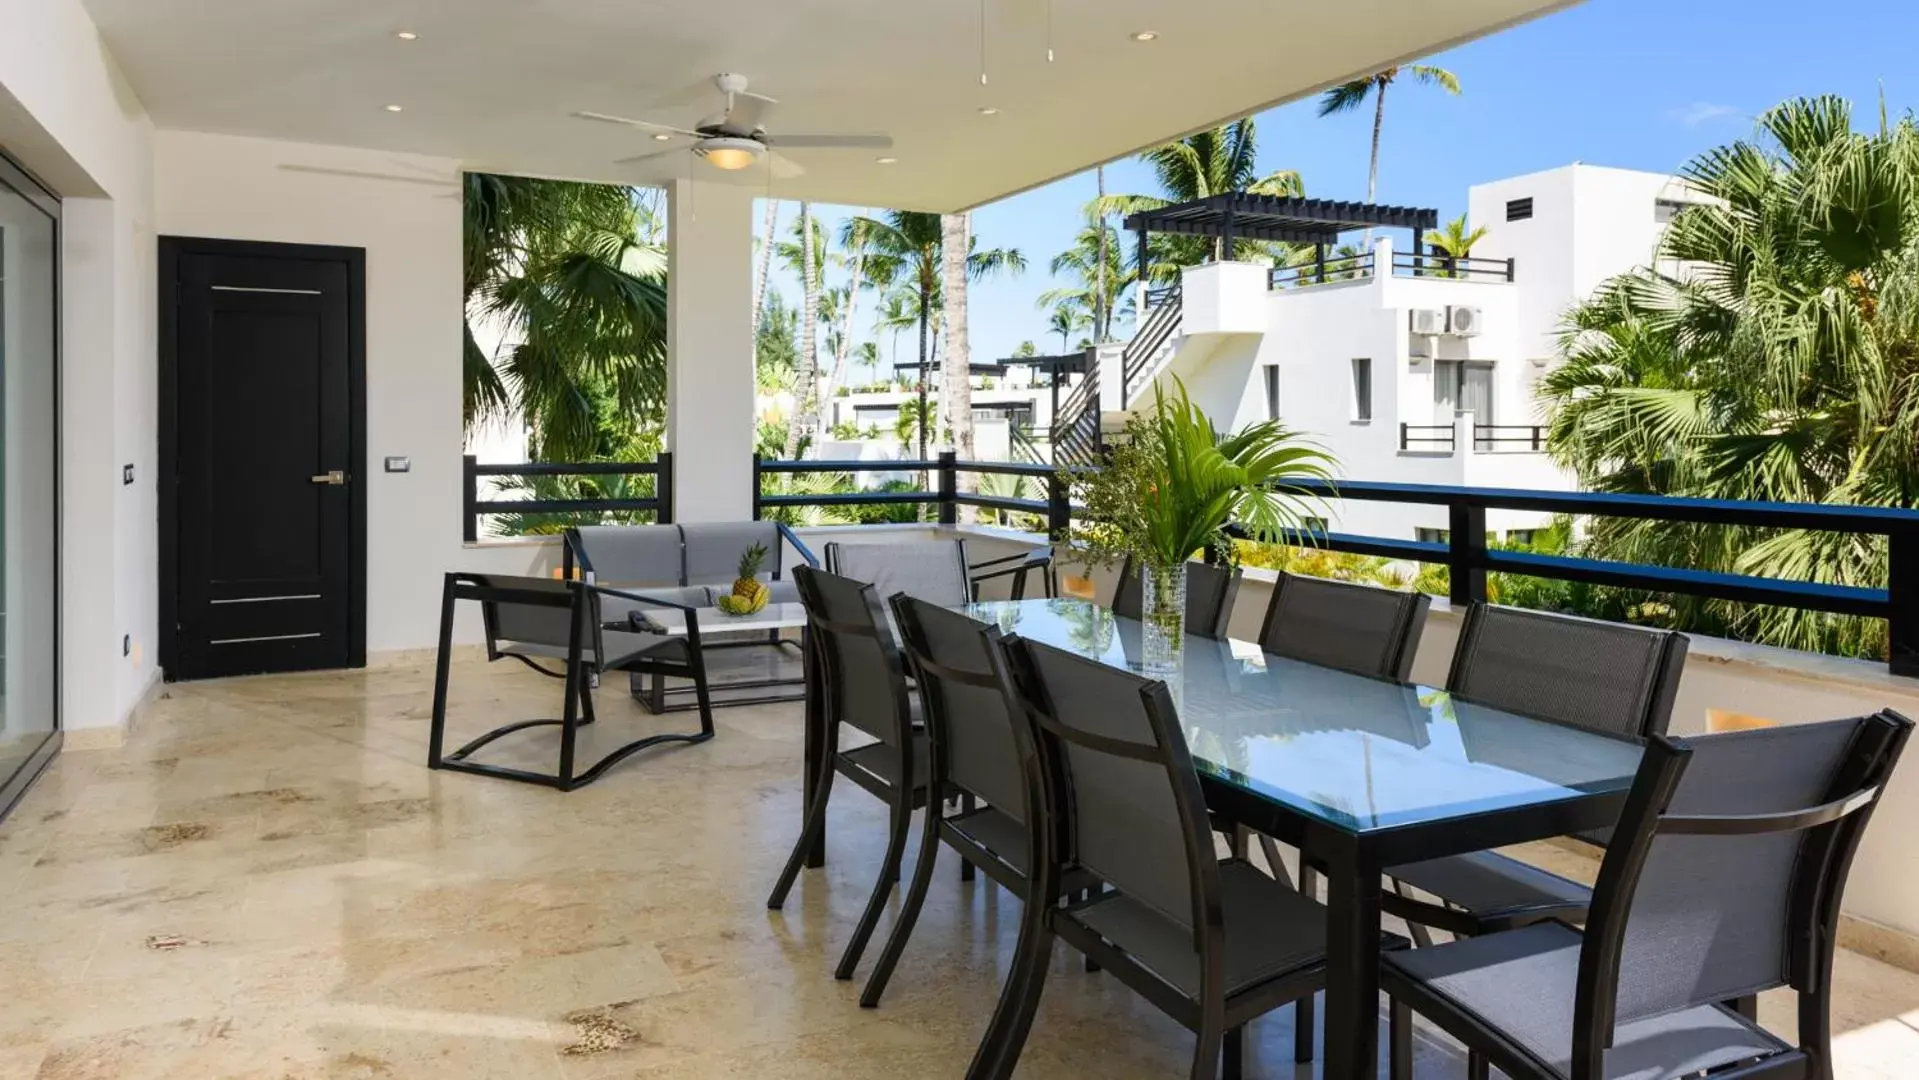 Balcony/Terrace, Restaurant/Places to Eat in Aligio Apart-hotel & Spa - Las Terrenas